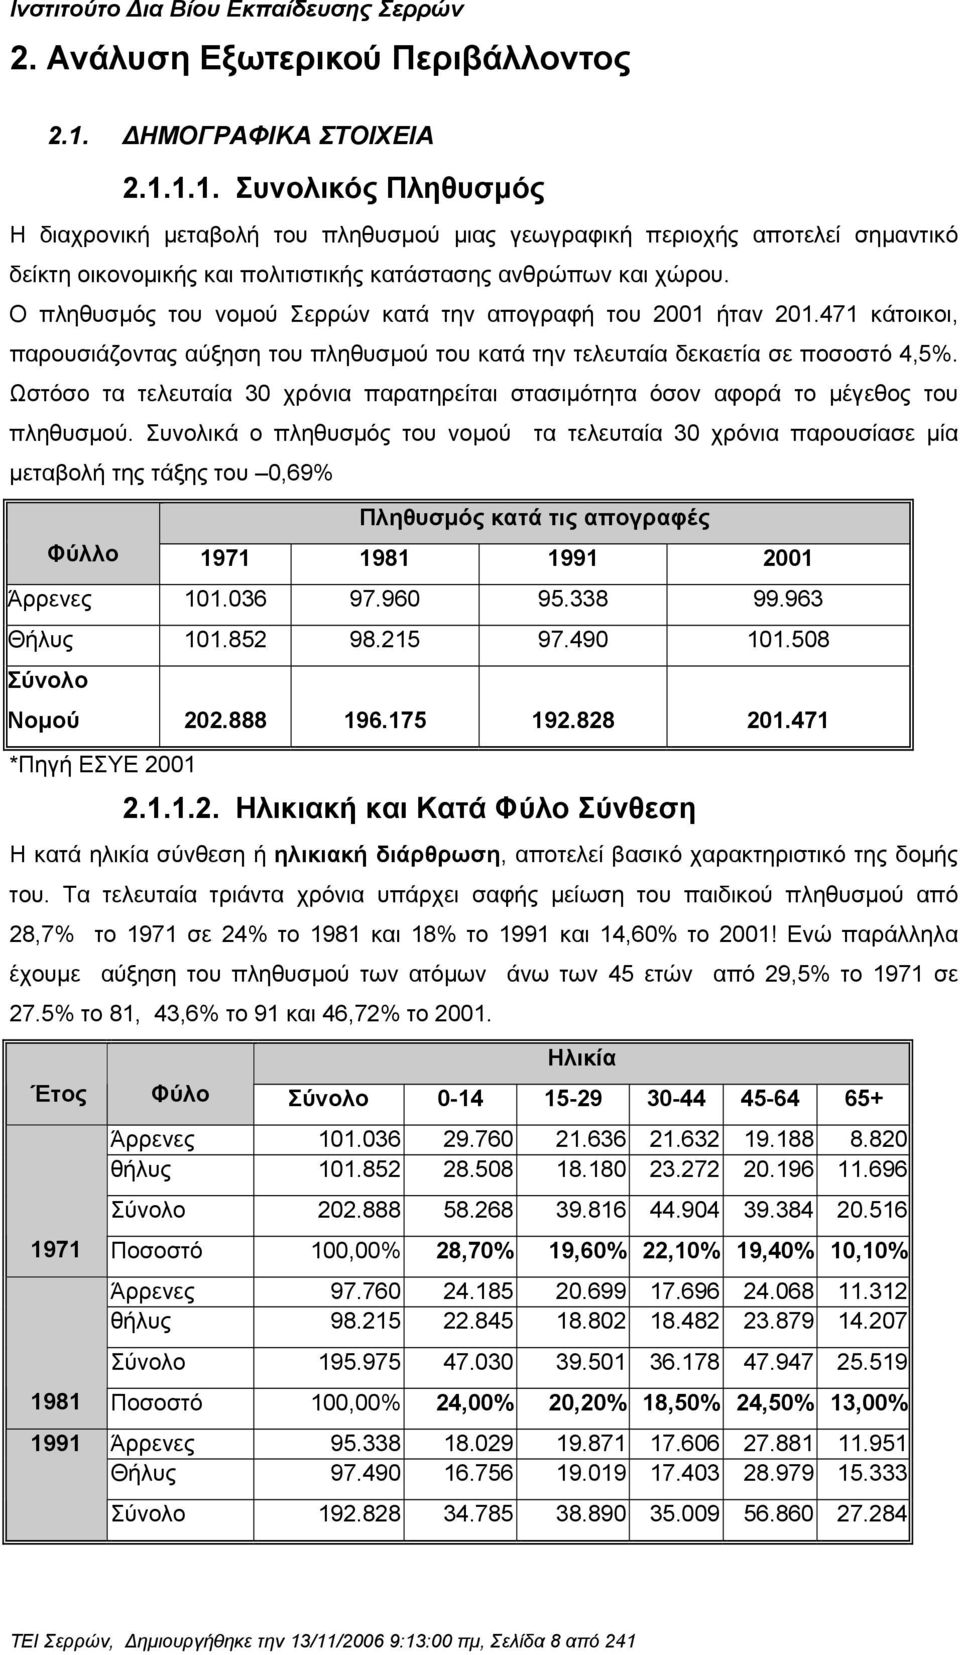 Ο πληθυσµός του νοµού Σερρών κατά την απογραφή του 2001 ήταν 201.471 κάτοικοι, παρουσιάζοντας αύξηση του πληθυσµού του κατά την τελευταία δεκαετία σε ποσοστό 4,5%.